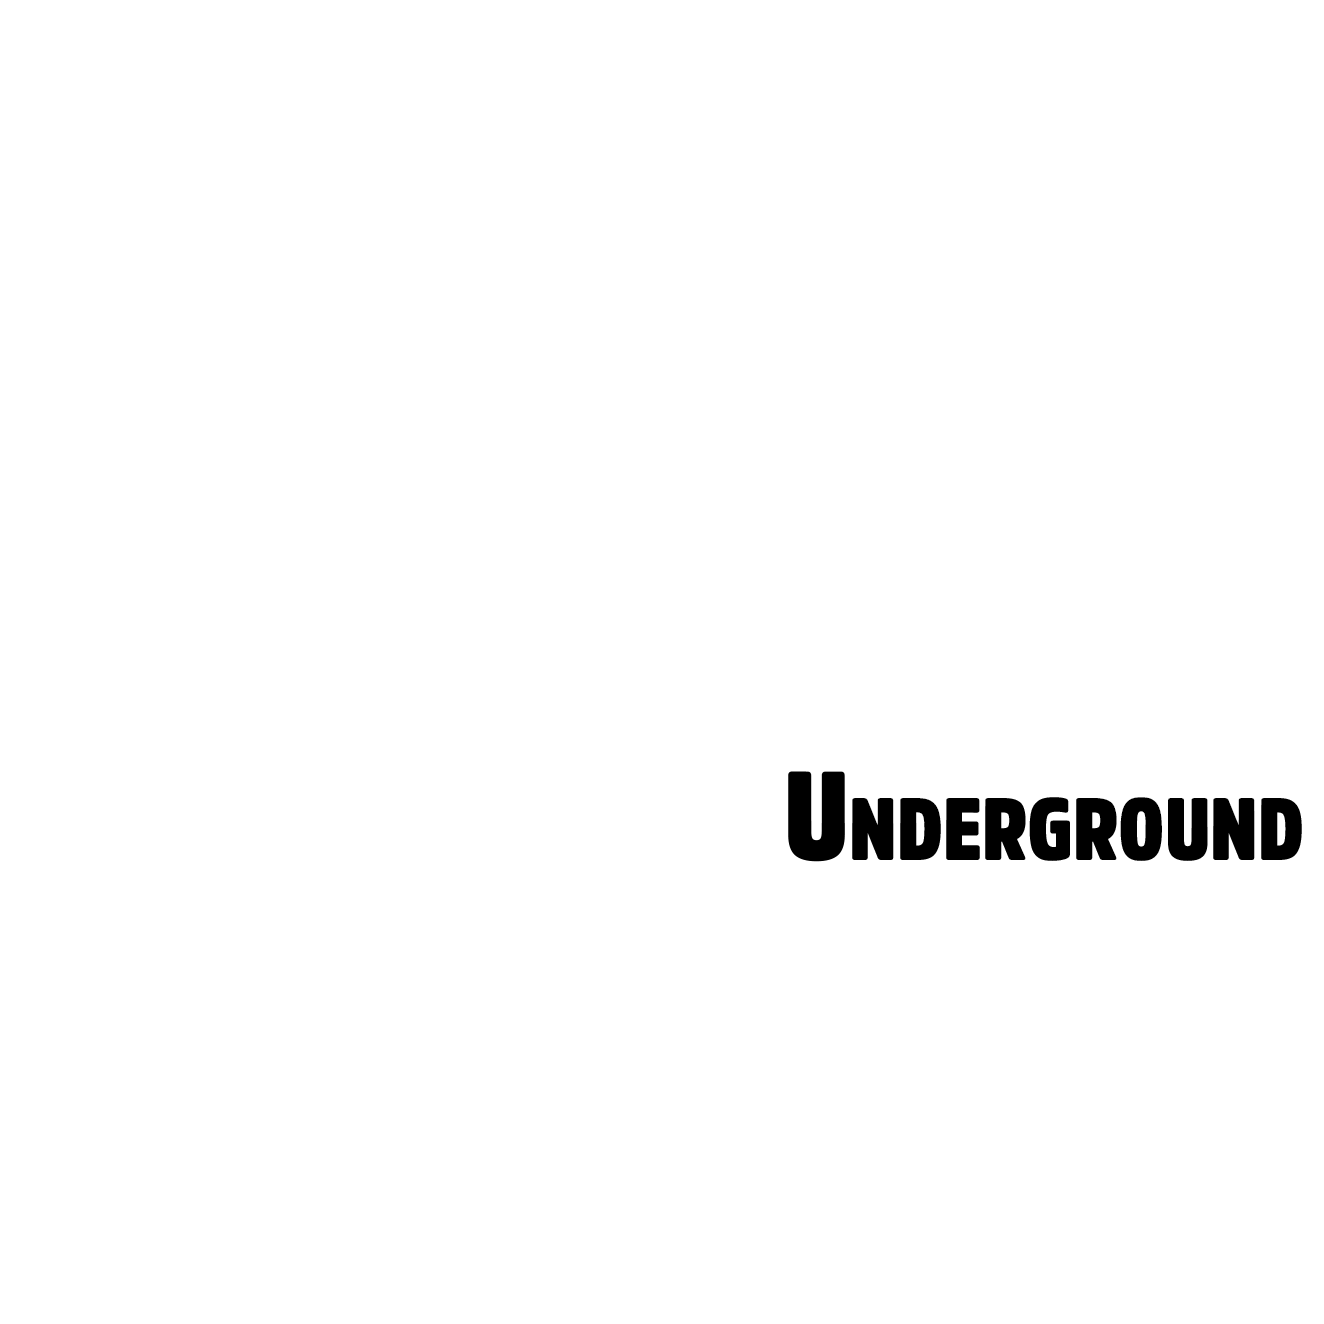 Bordo TV Underground